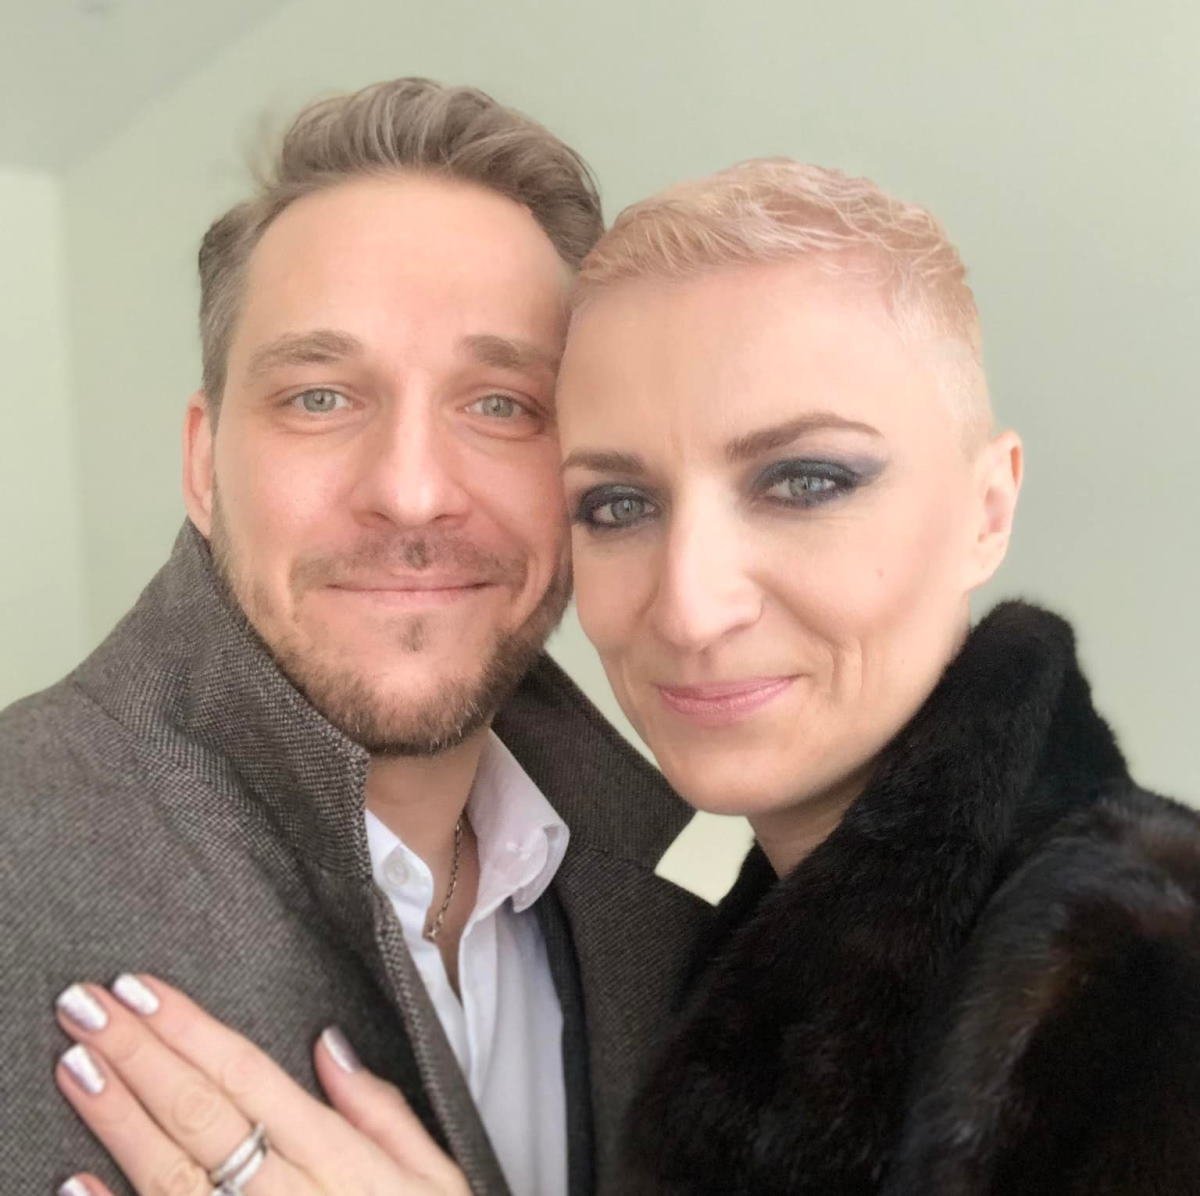 Вдова Дмитрия Марьянова снова вышла замуж после 4 лет траура